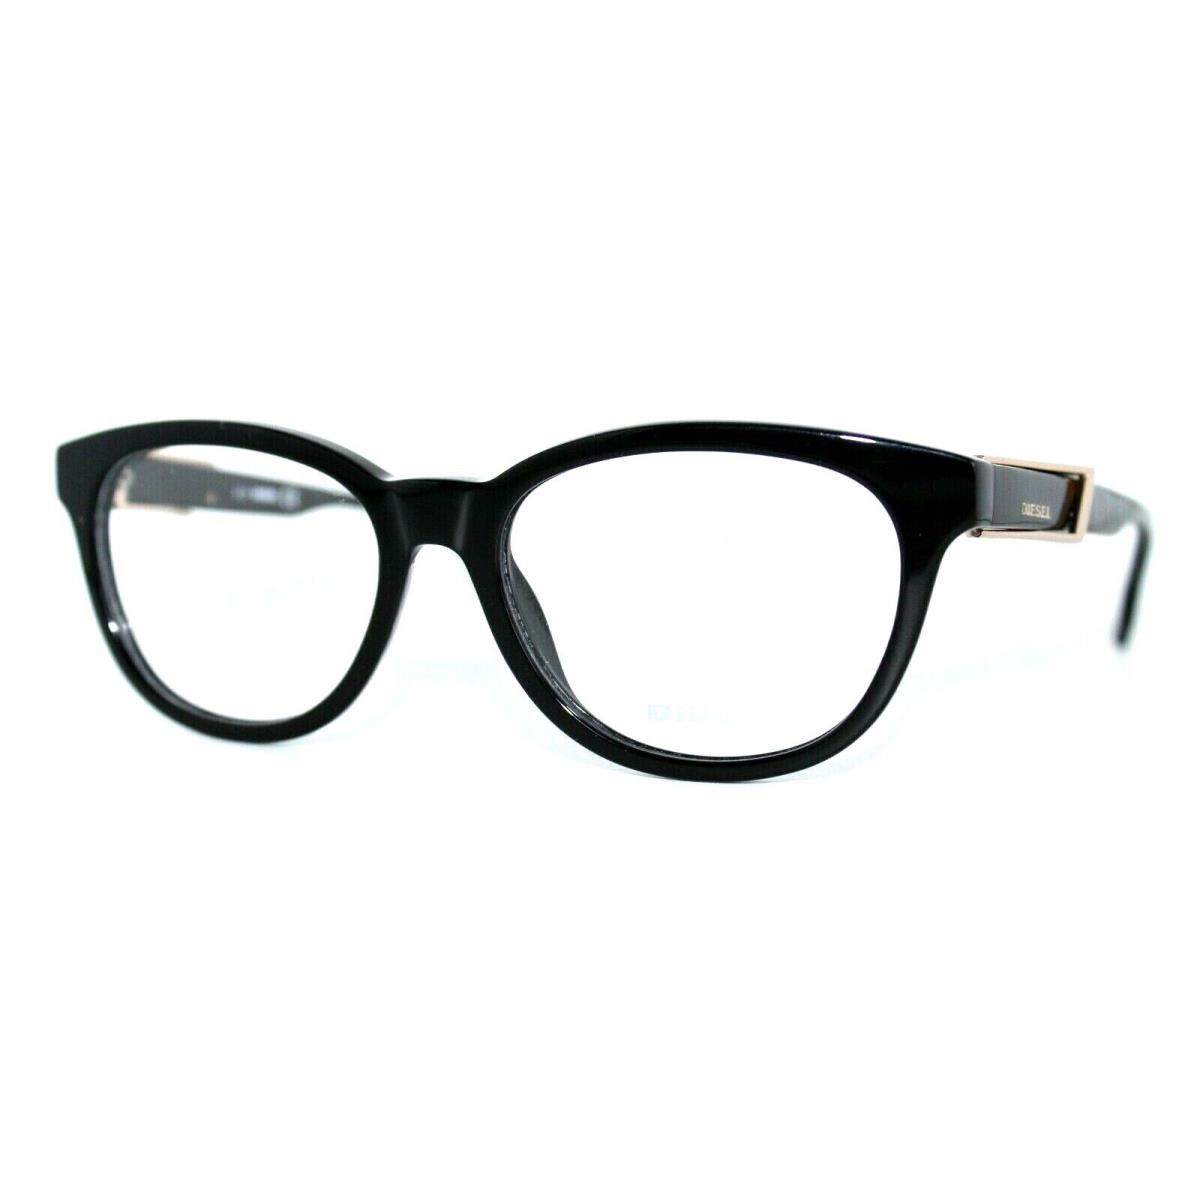 Diesel DL5112 001 Black Eyeglasses Frames 52-16-145MM W/case RX